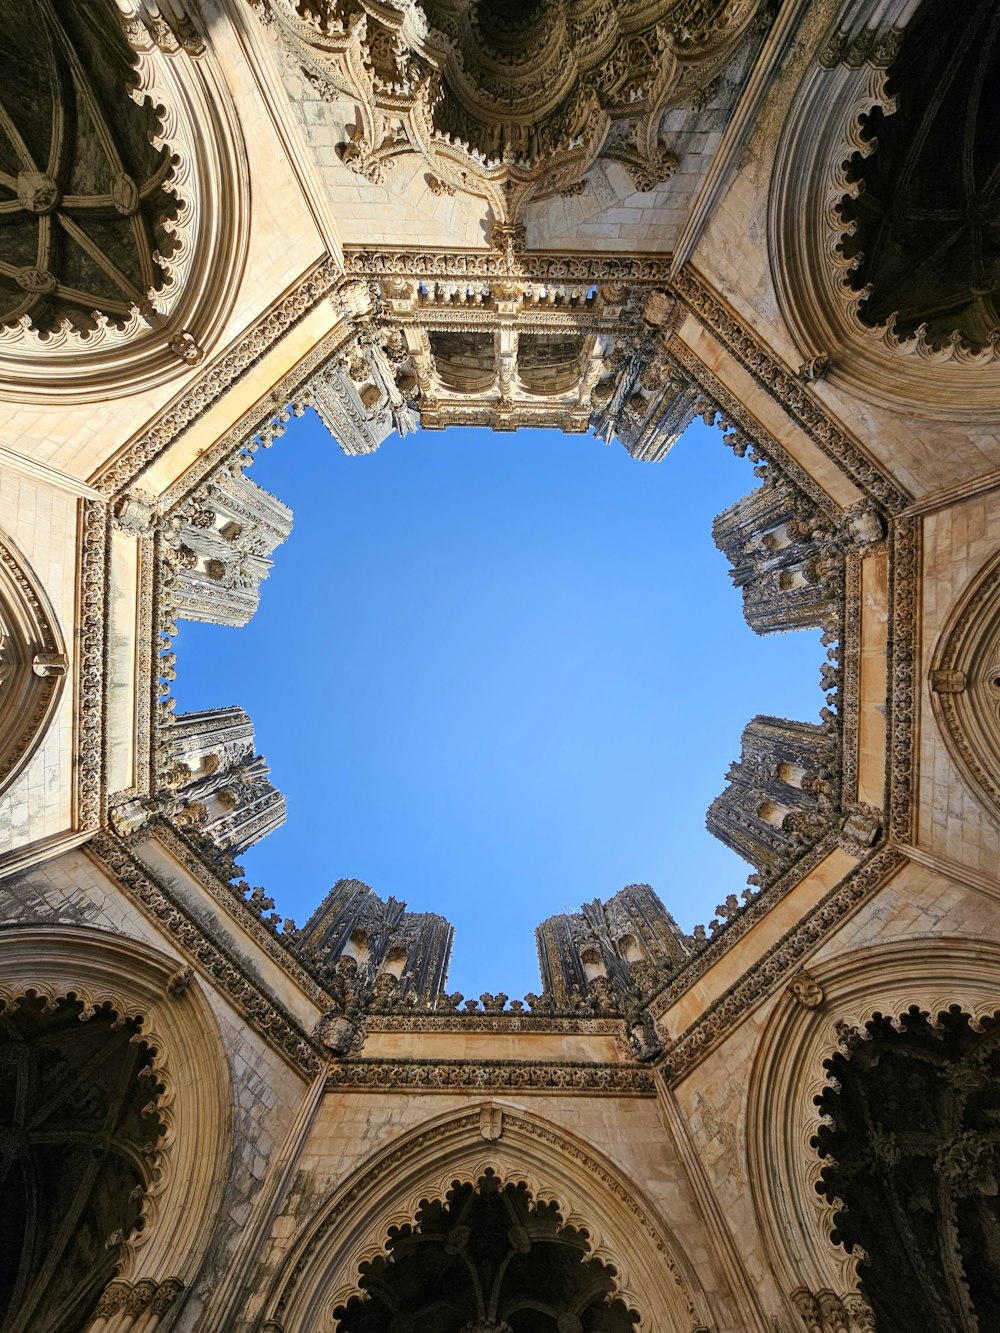 Regarder le plafond d’une cathédrale